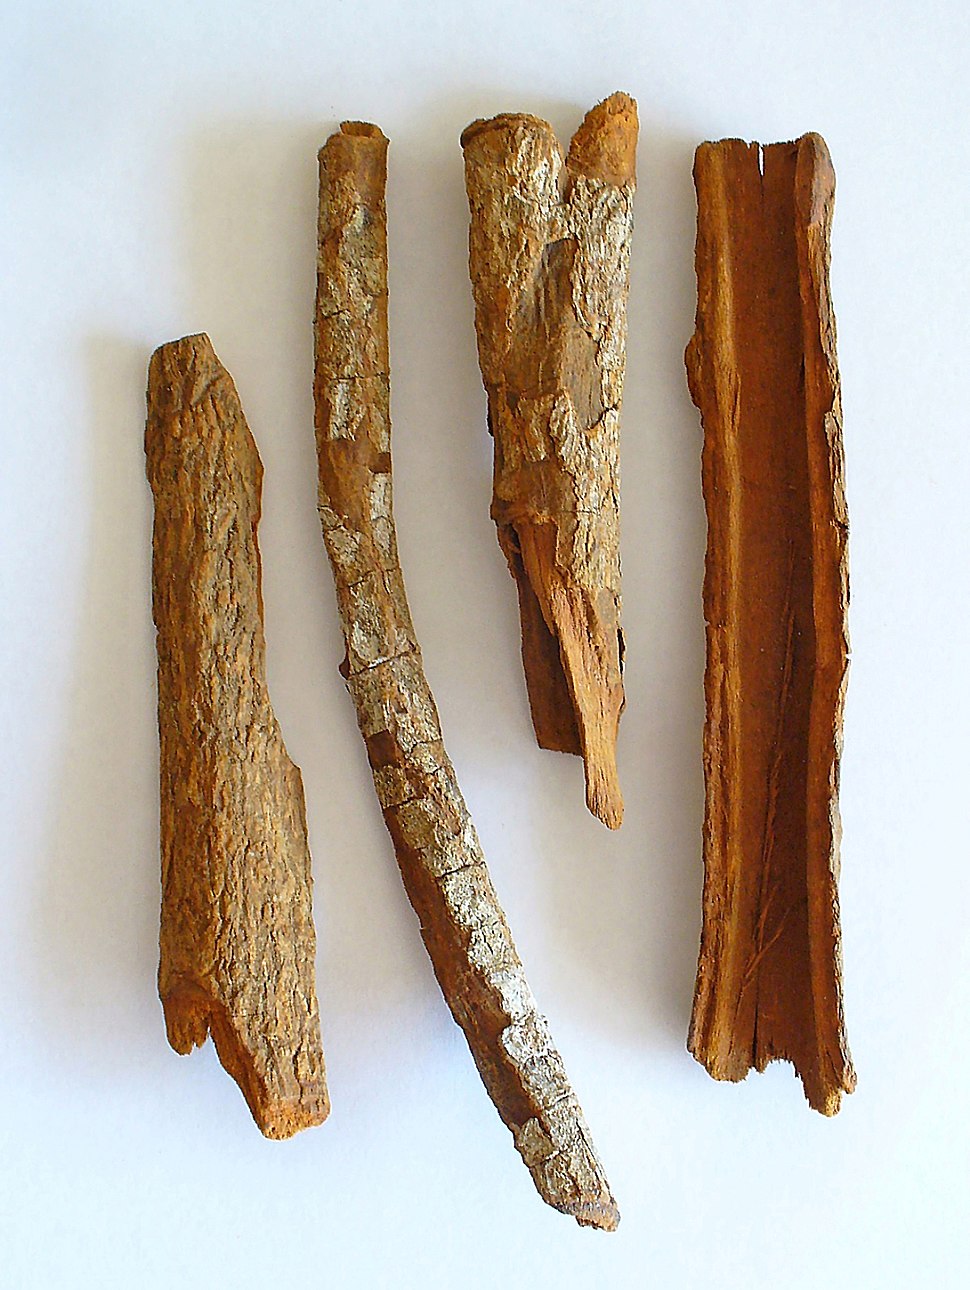 Foto de quatro cascas do tronco da planta quina sobre uma superfície branca